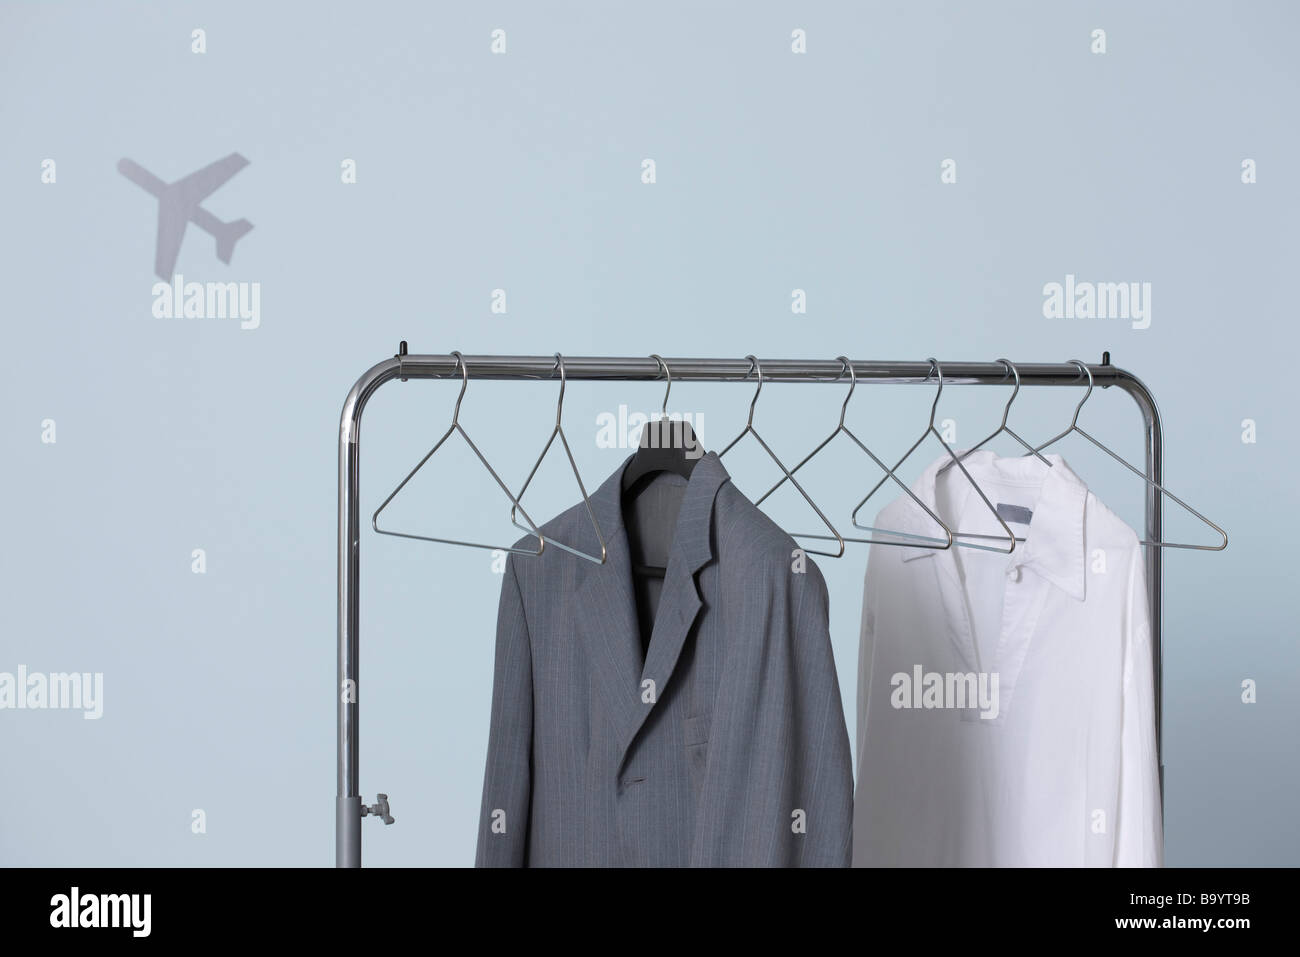 L'homme et formelles tenues décontractées hanging on clothes rack, forme de l'avion en arrière-plan Banque D'Images